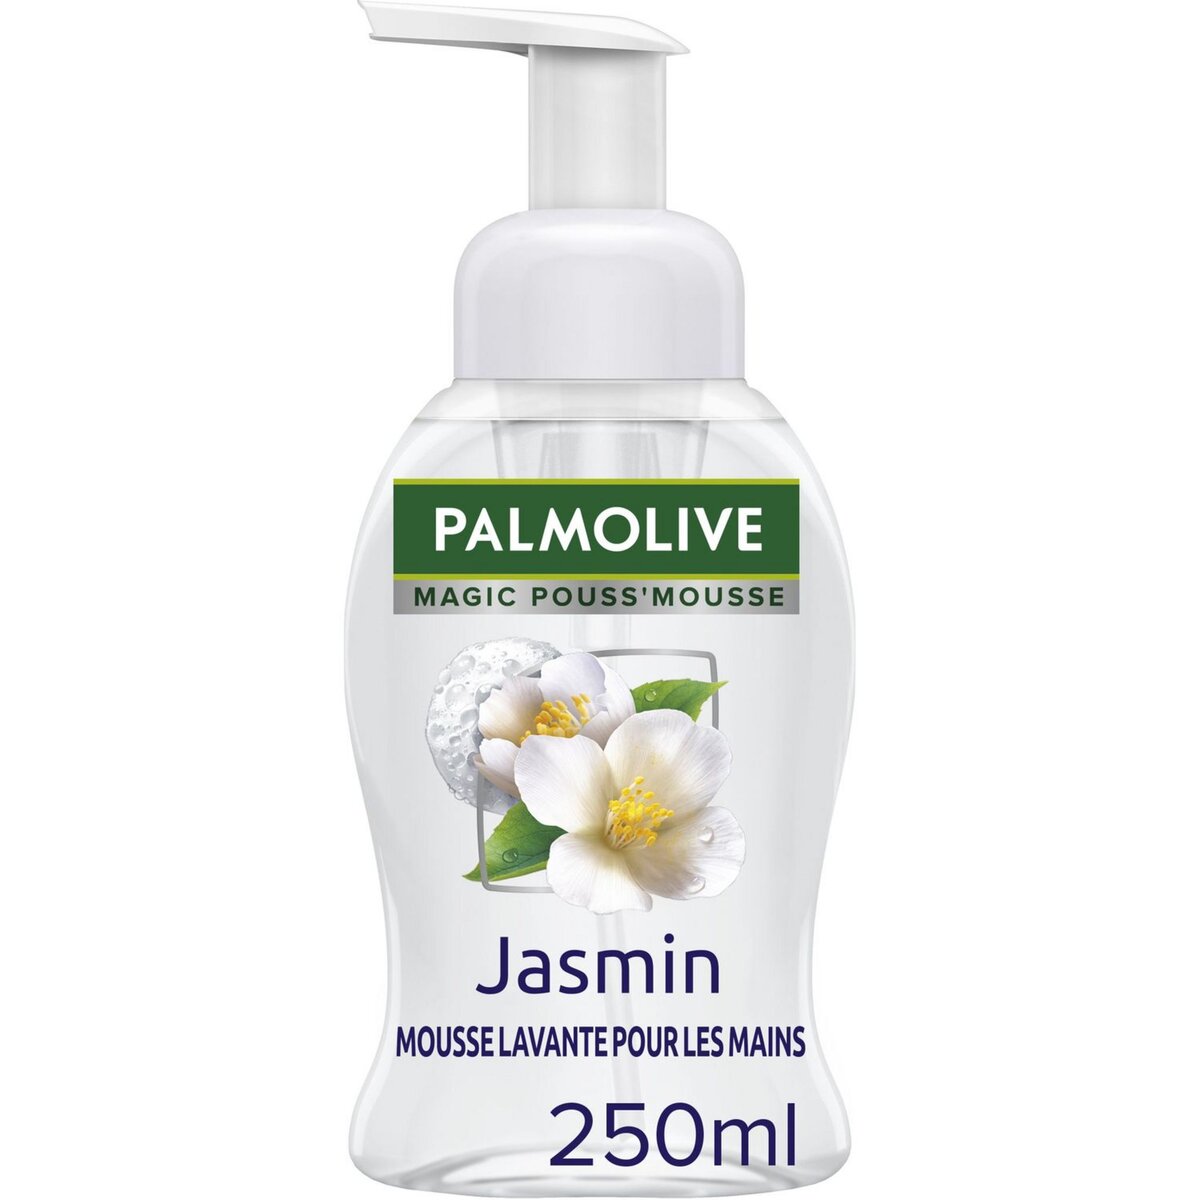 PALMOLIVE Mousse lavante pour les mains parfum jasmin 250ml